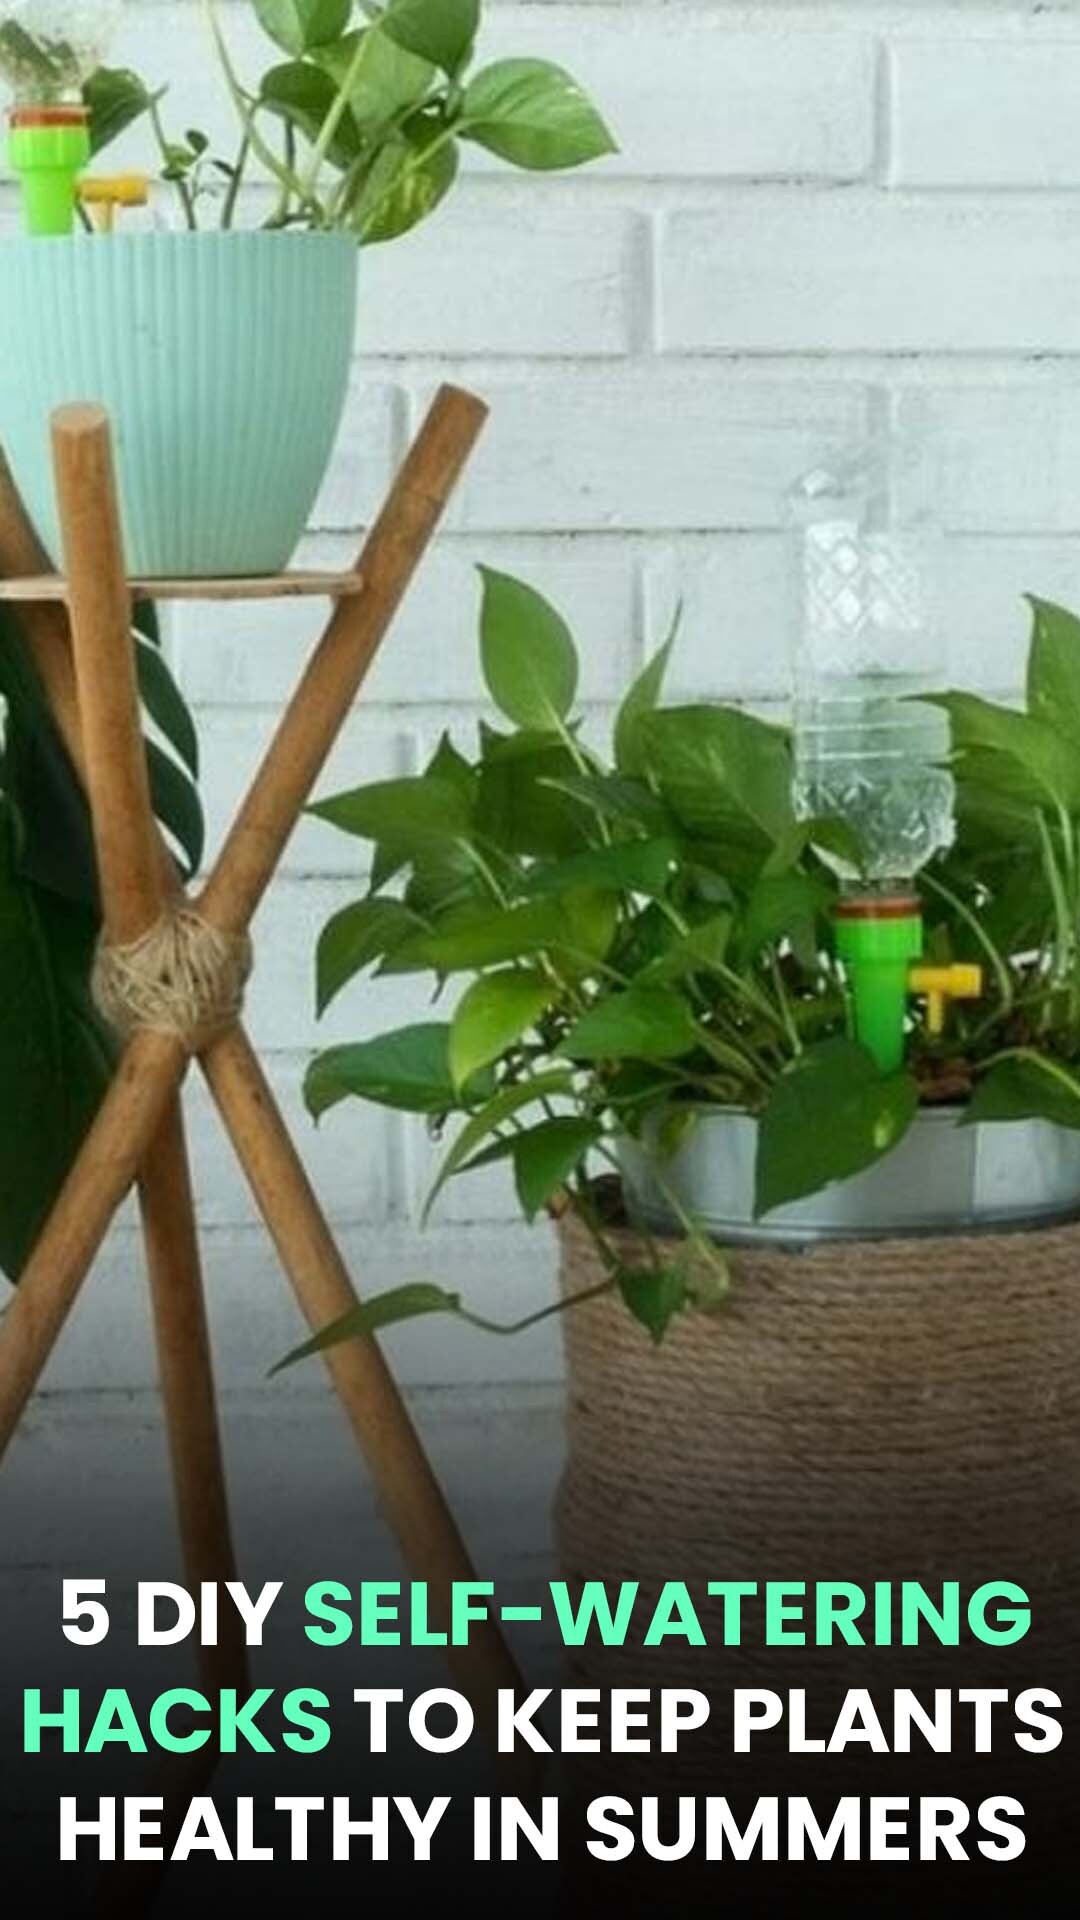 5 DIY Self-Watering Hacks To Keep Plants Healthy in Summers